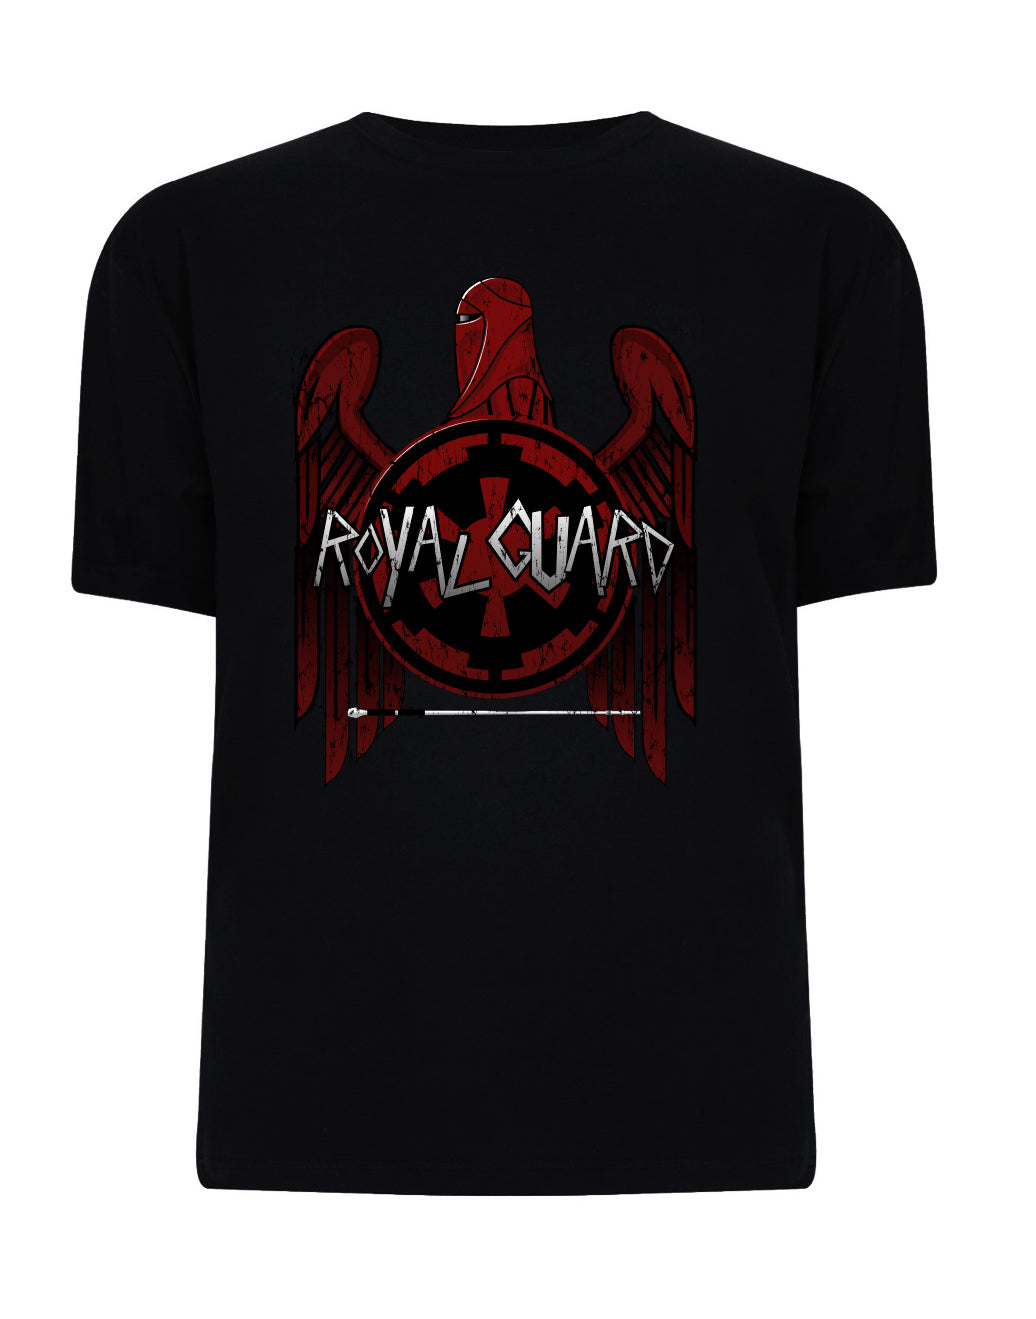 Royal Guard Slayer Shirt